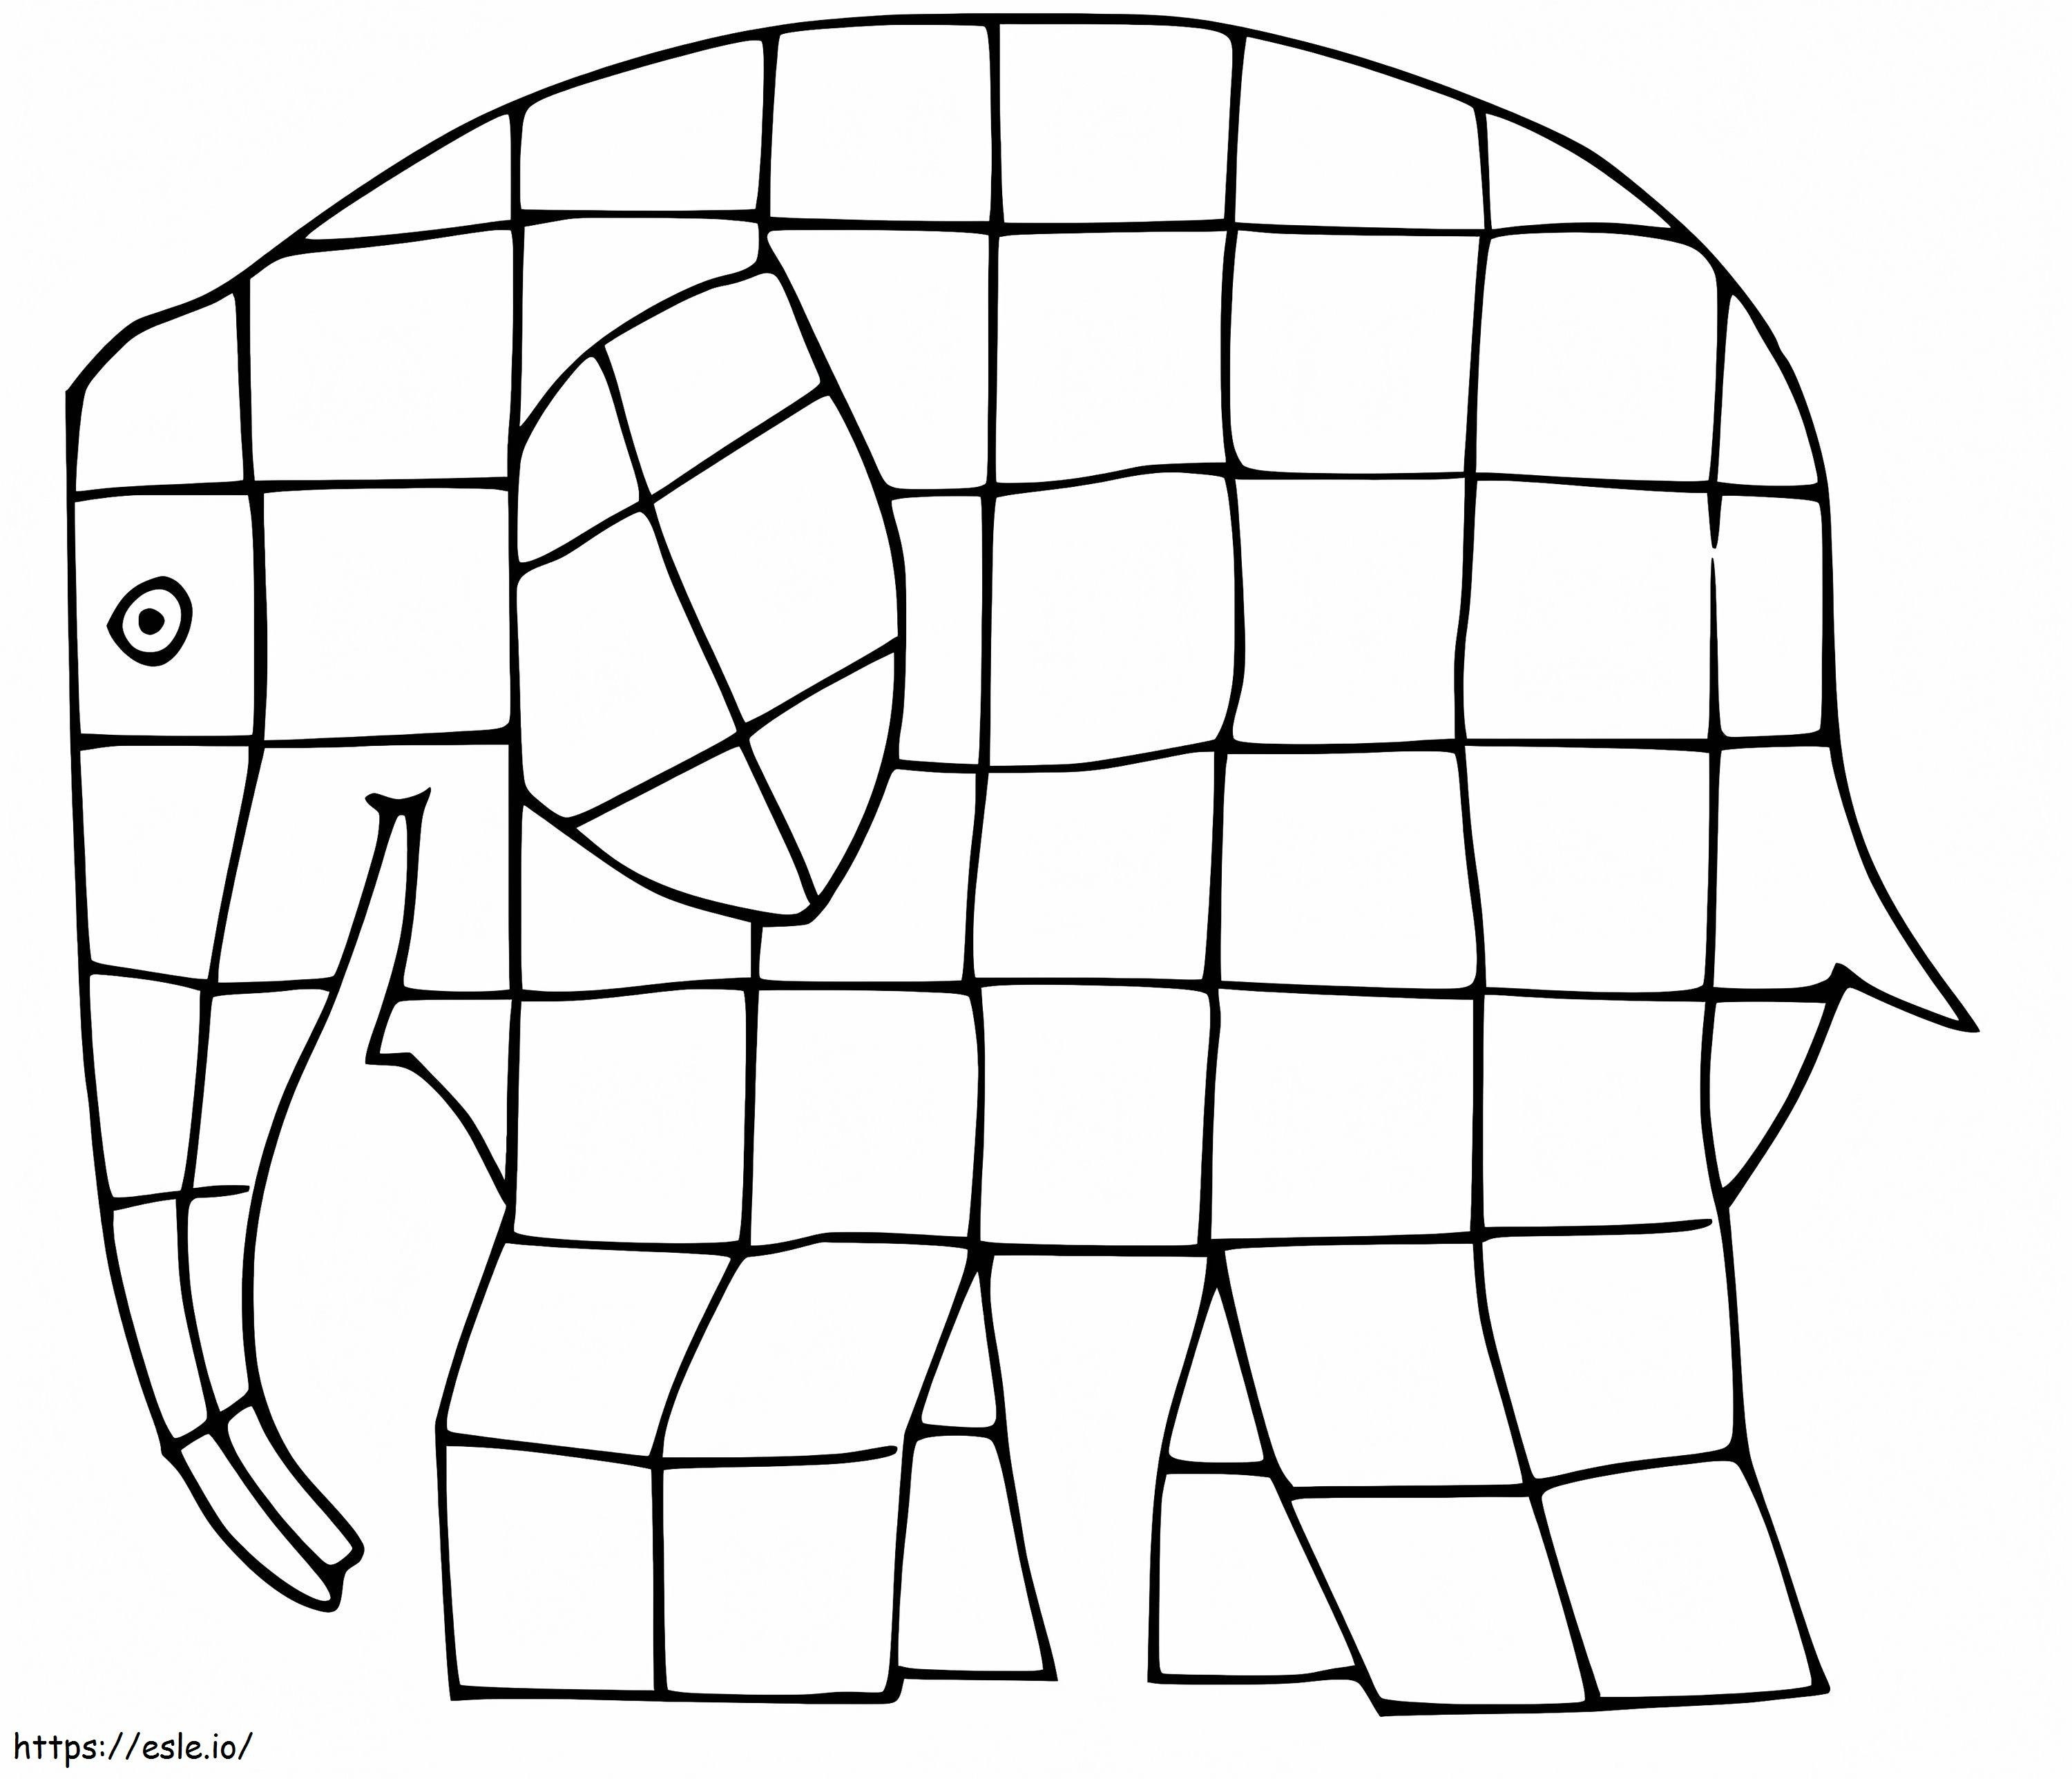 Coloriage Gratuit Elmer l'éléphant à imprimer dessin